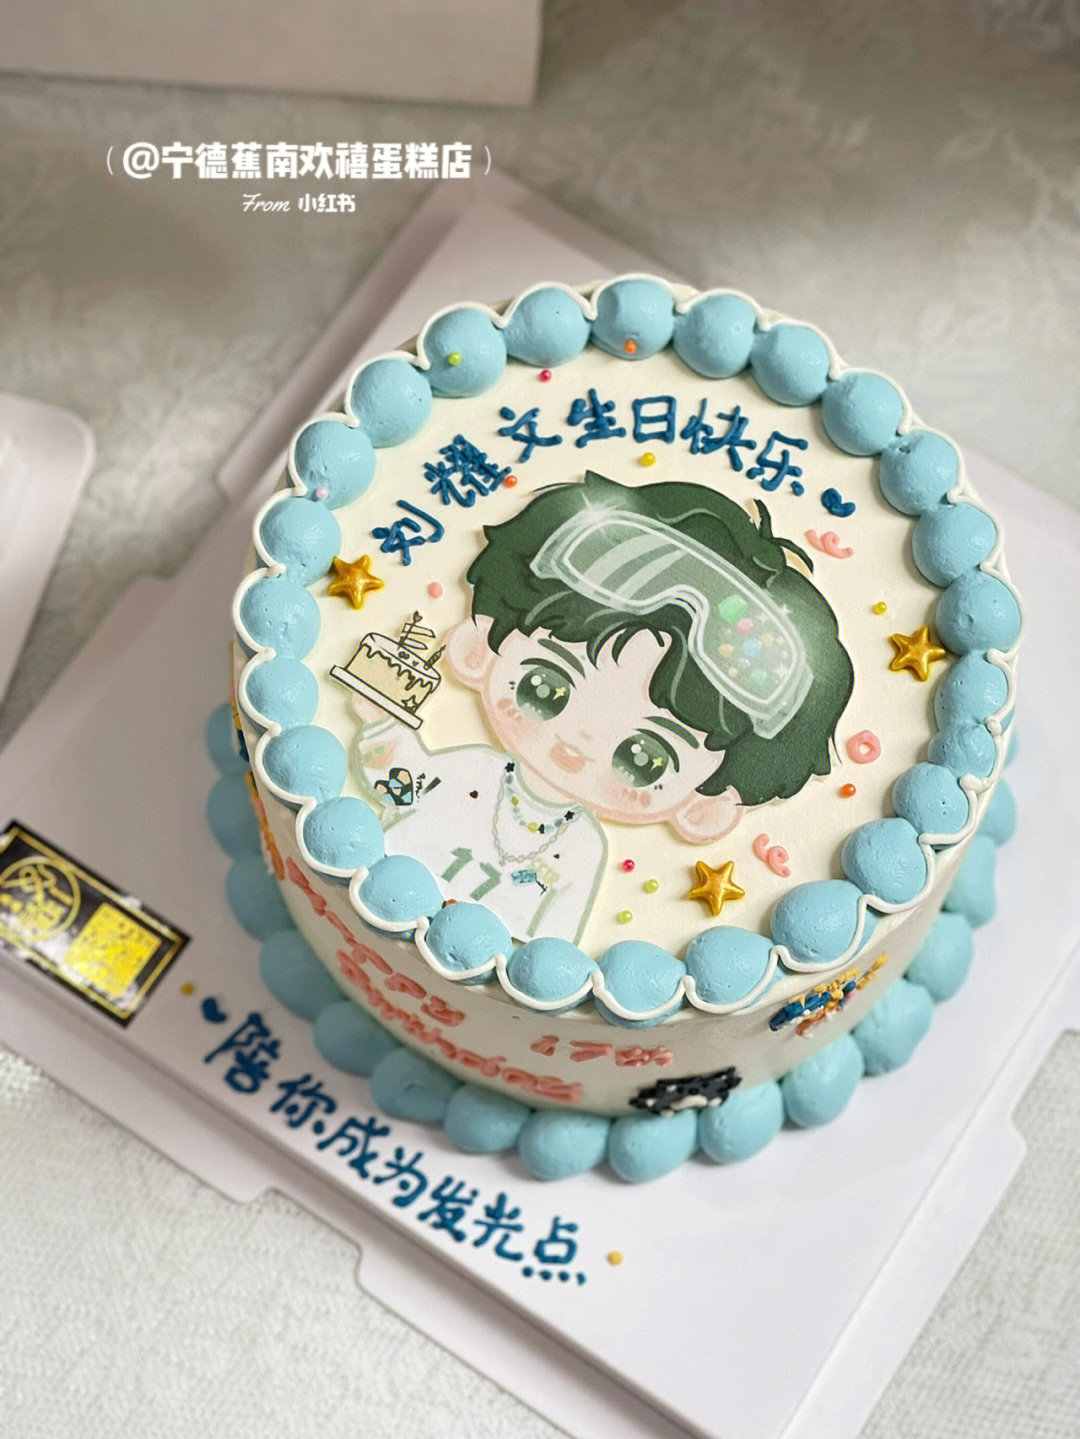 刘耀文生日蛋糕设计图图片